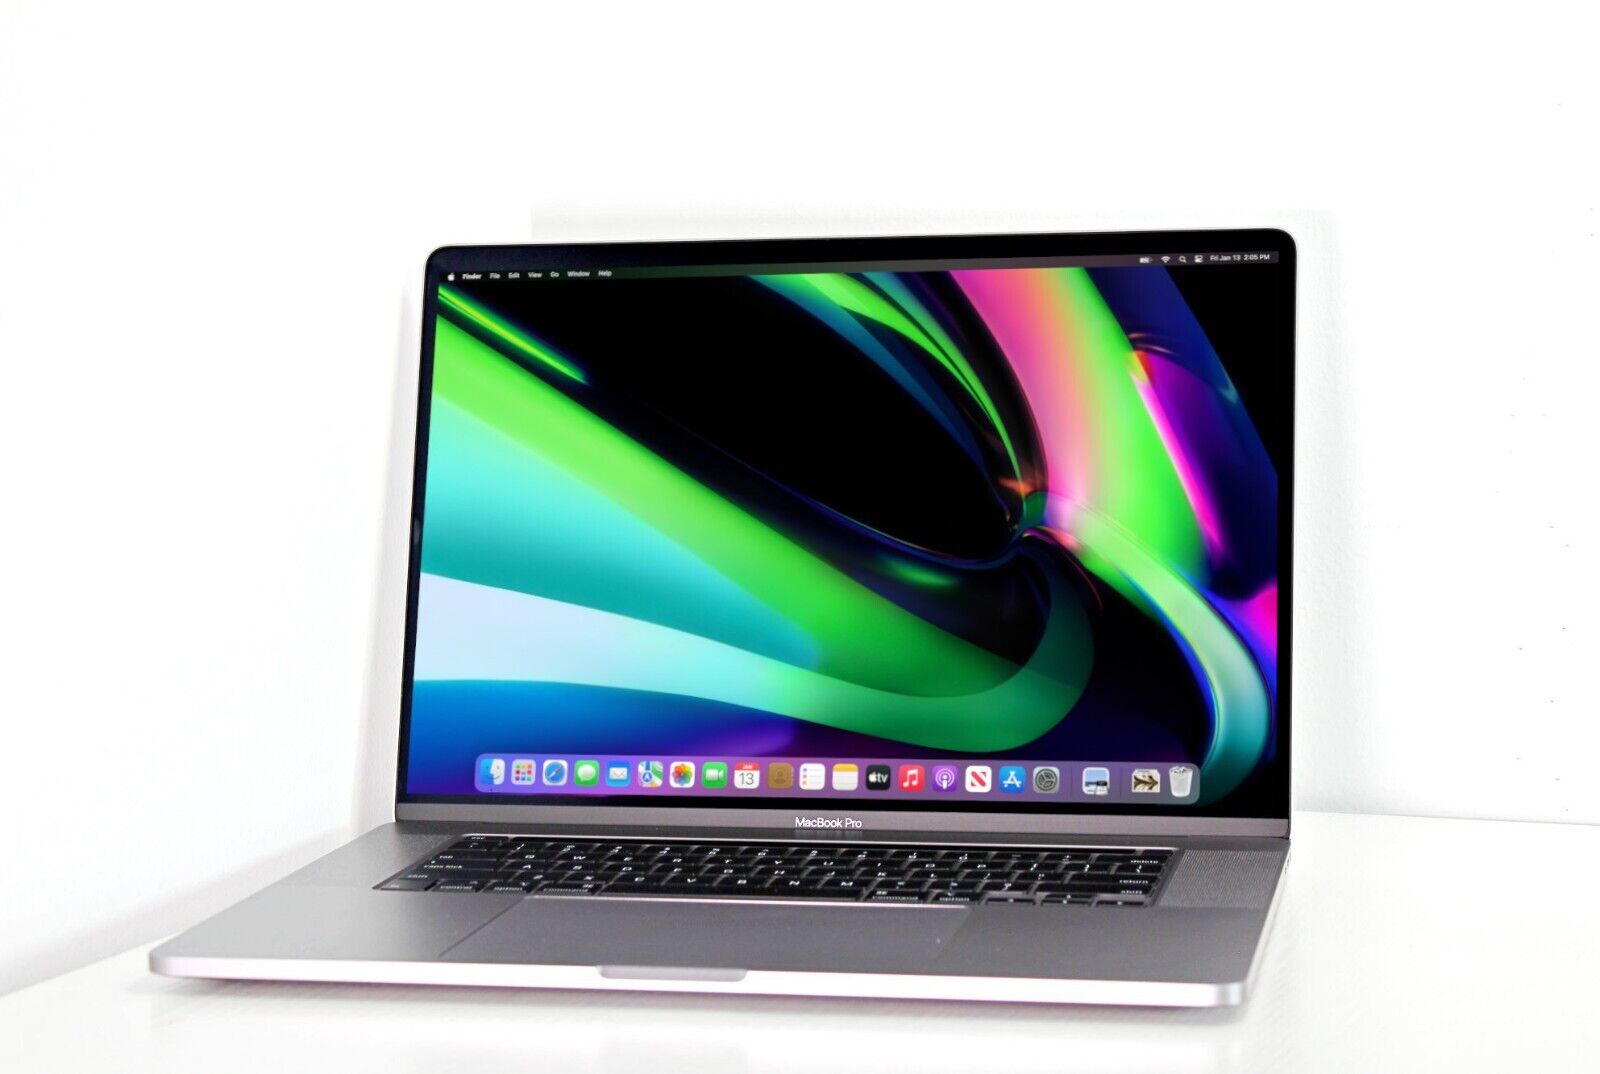 Apple MacBook Pro 2019 16-inch Up to 2.4GHz i9 64GB RAM 2TB SSD +1-Year Warranty